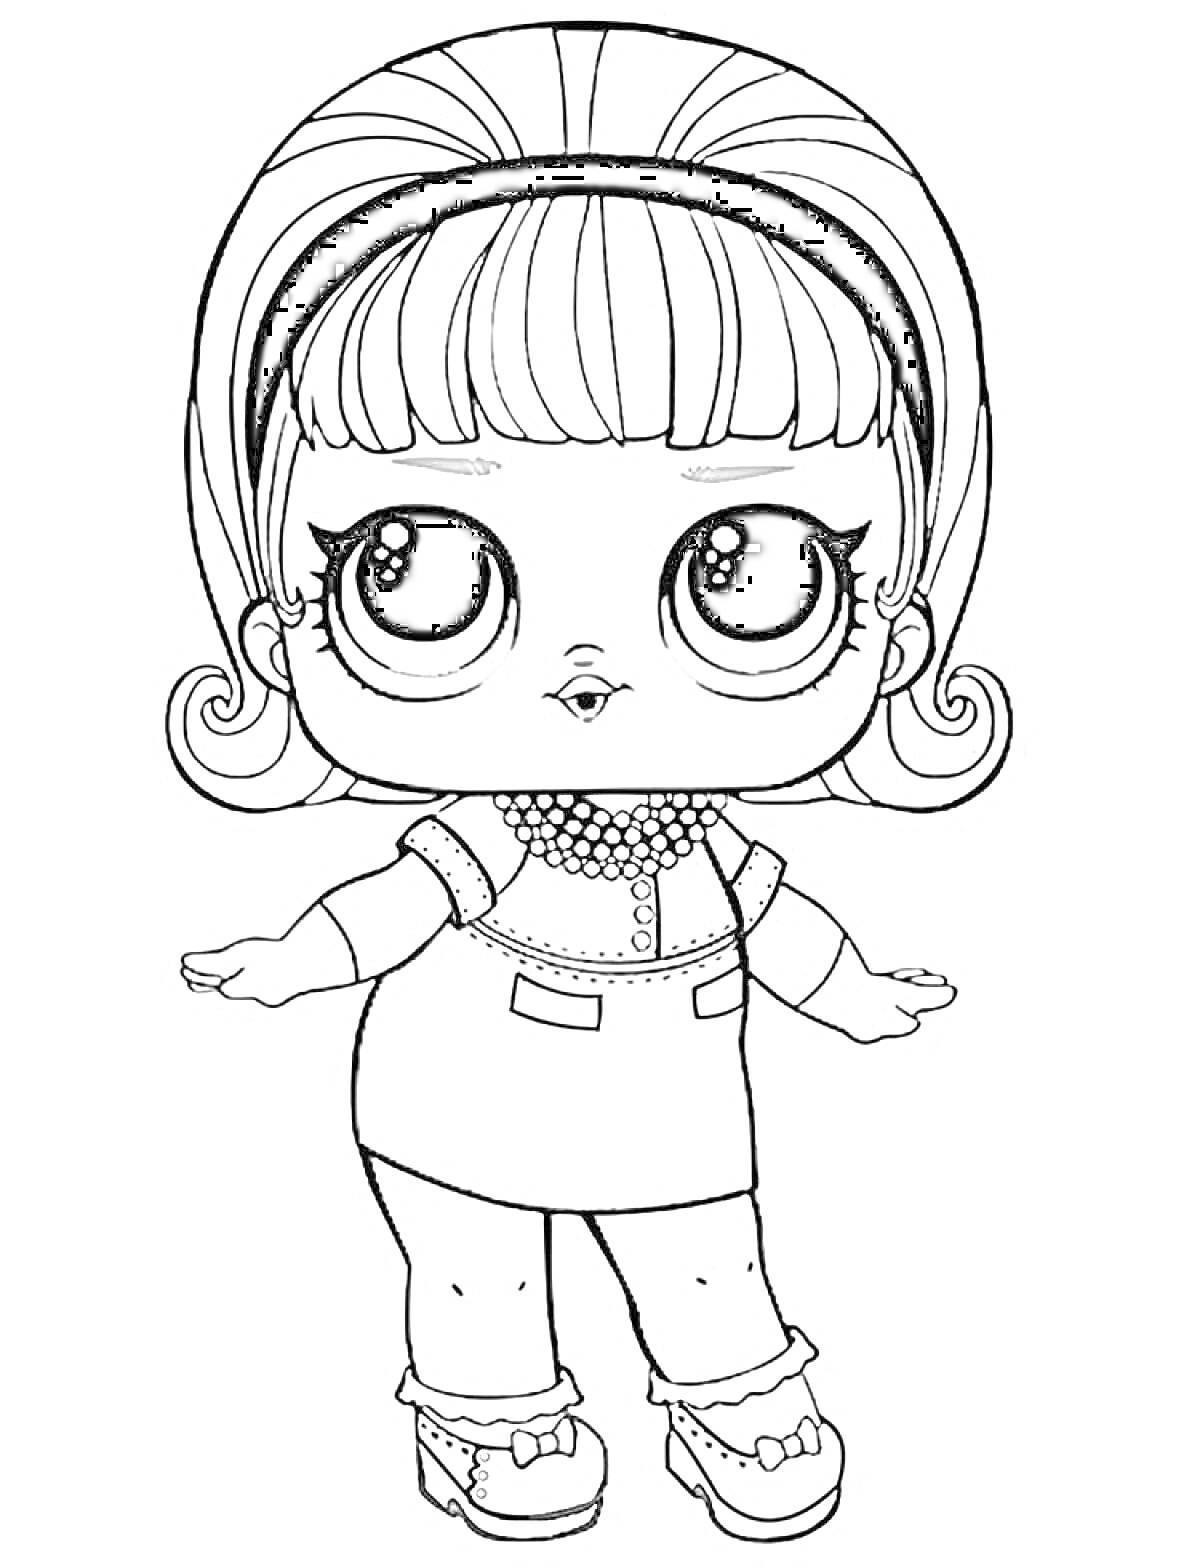 Раскраска Кукла Лол с короткими волосами и платьем с декоративным воротником